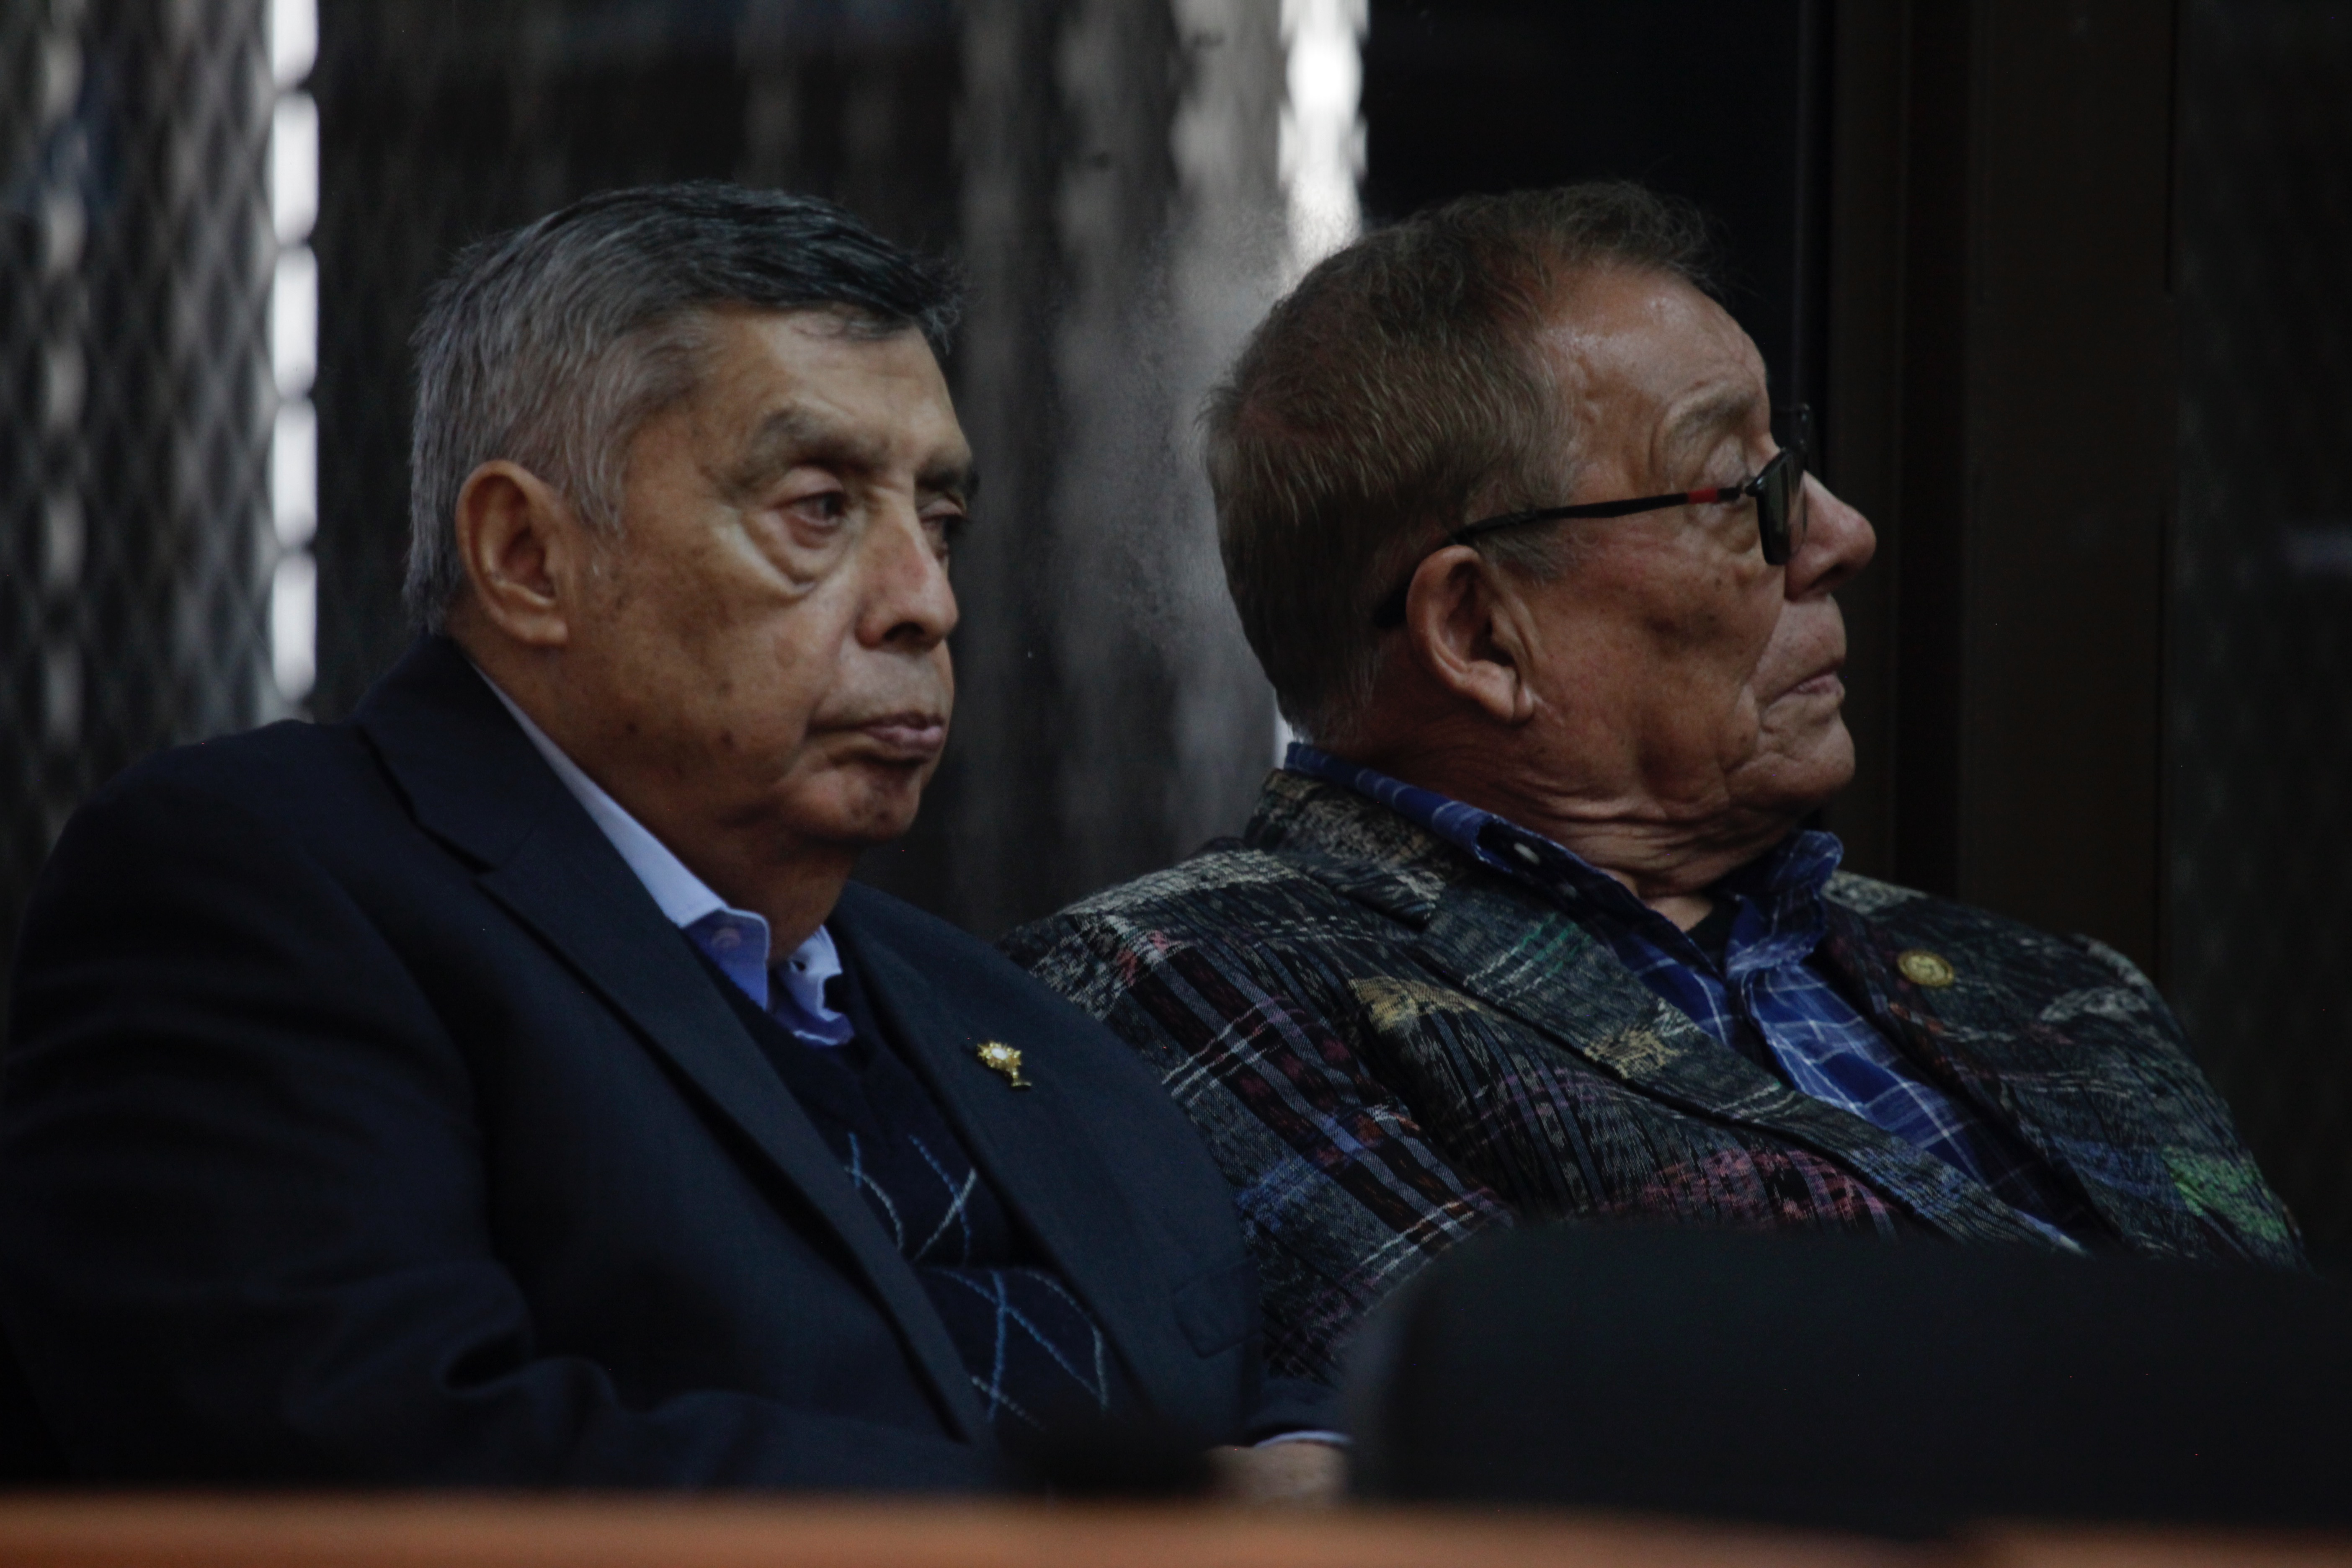 Un tribunal suspendió la audiencia de juicio contra los militares retirados Benedicto Lucas y Manuel Callejas, acusados de genocidio, debido a complicaciones en su estado de salud. (Foto Prensa Libre: Hemeroteca PL/Noe Medina)